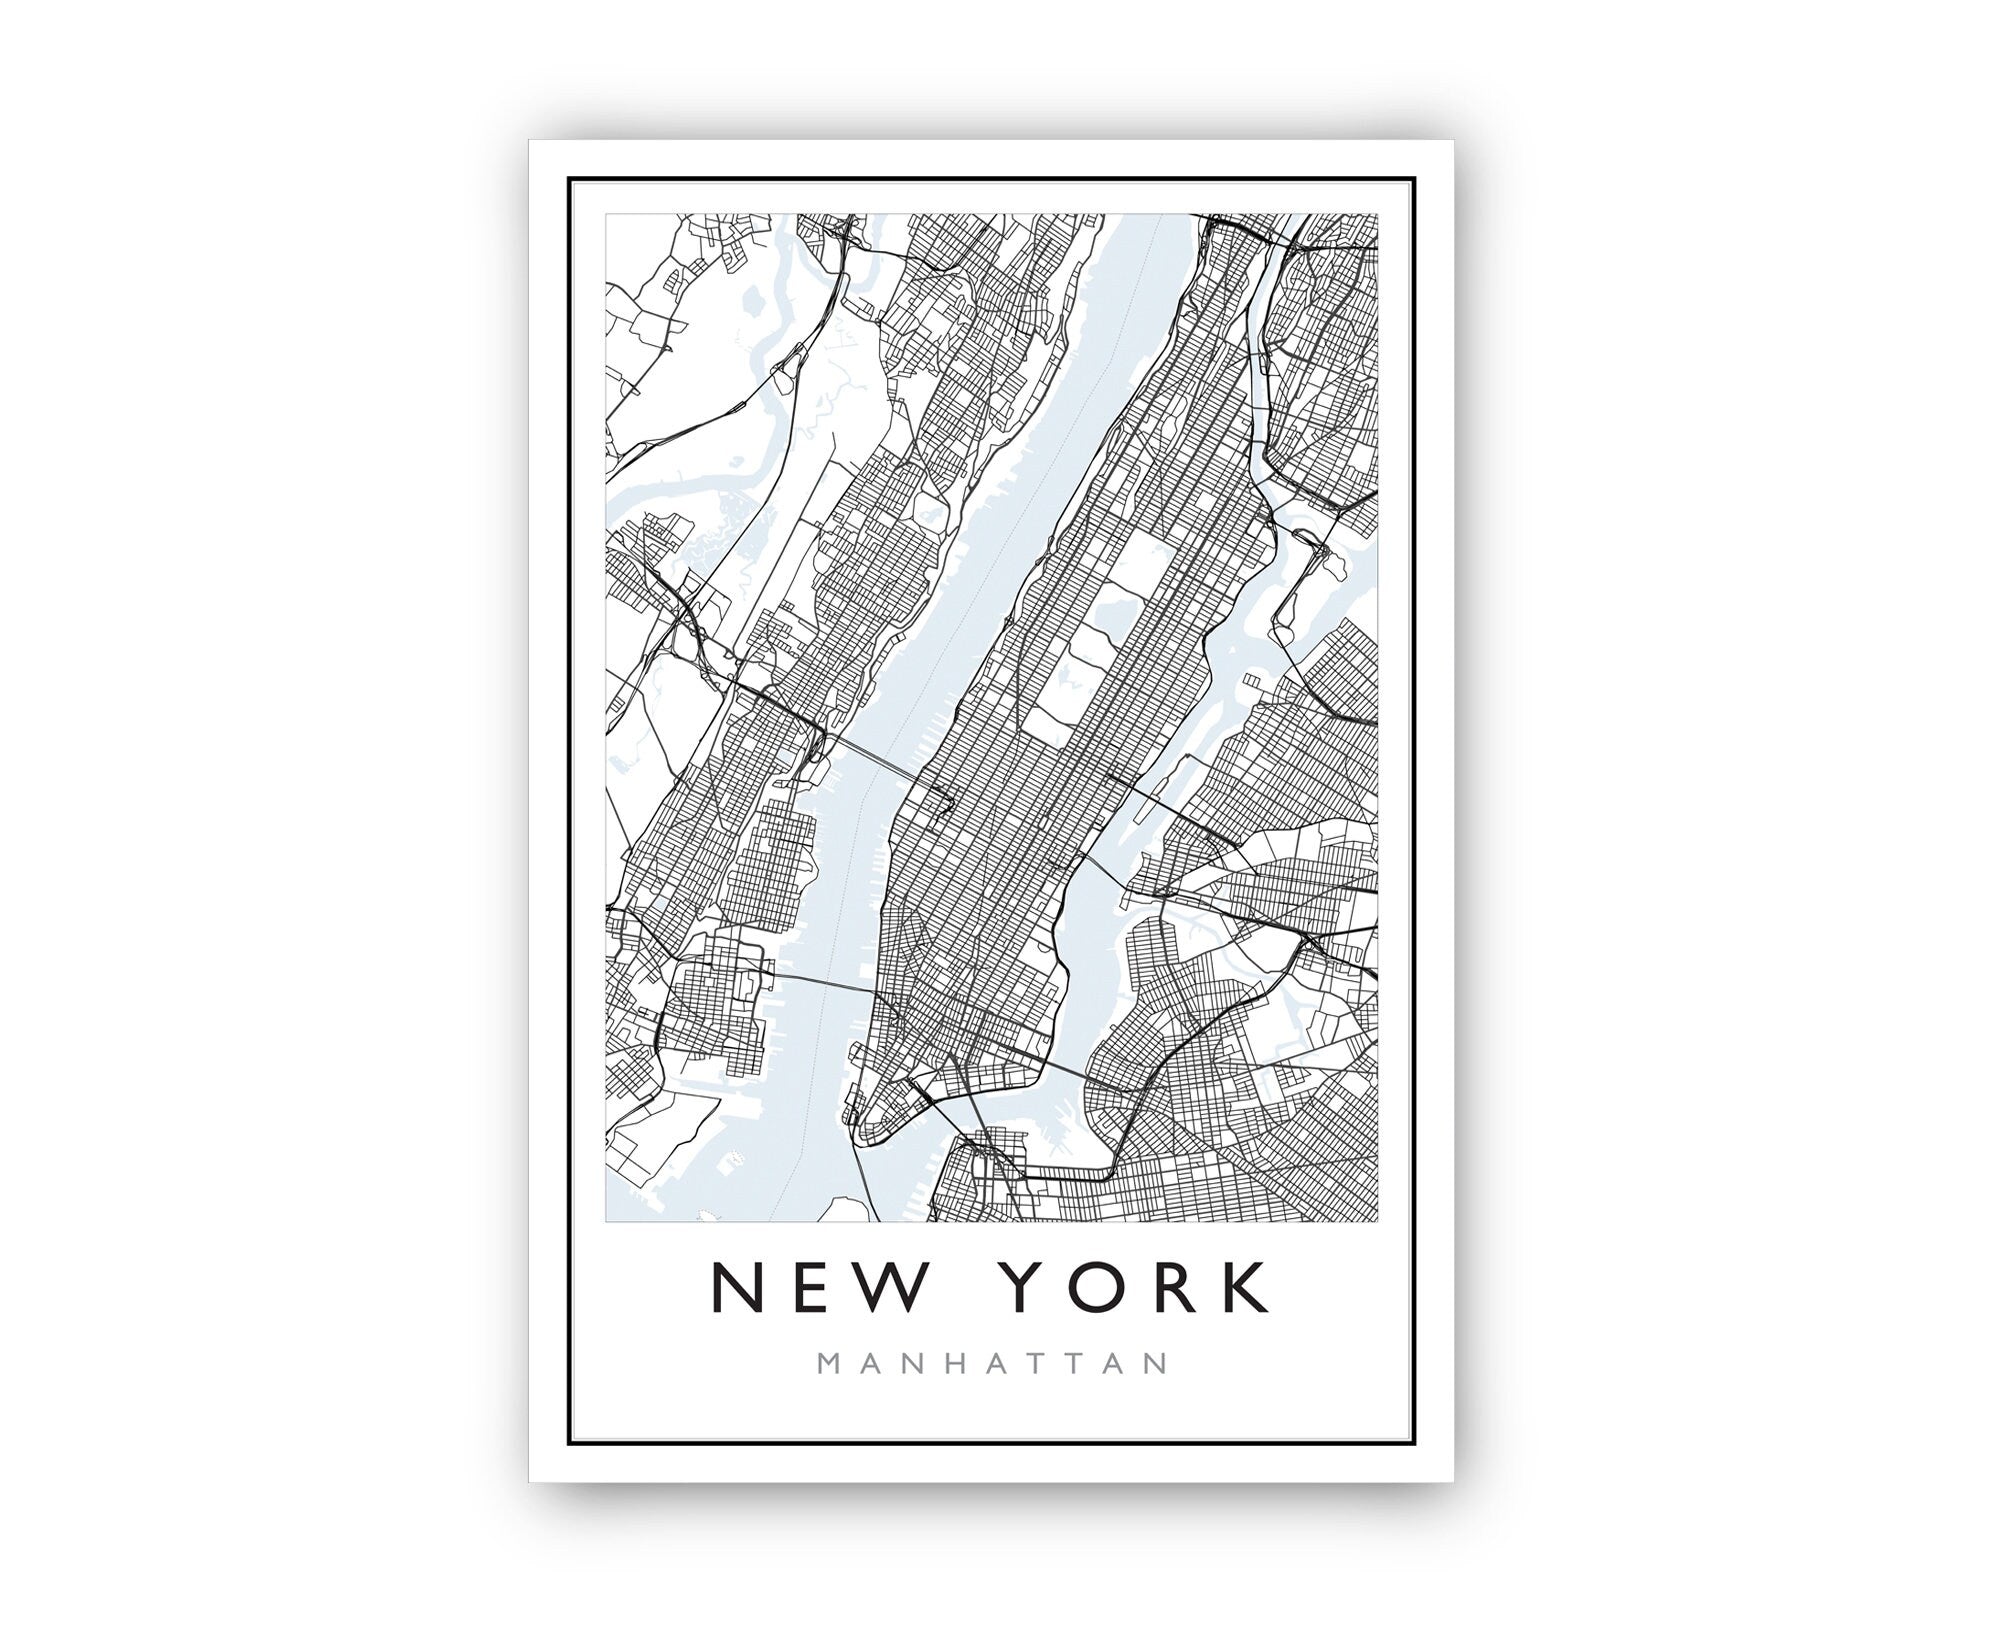 New York Manhattan City Map, Manhattan Road Map Poster, City Street Map Print, US City Modern City Map, Home Wall Art, Office Wall Decor